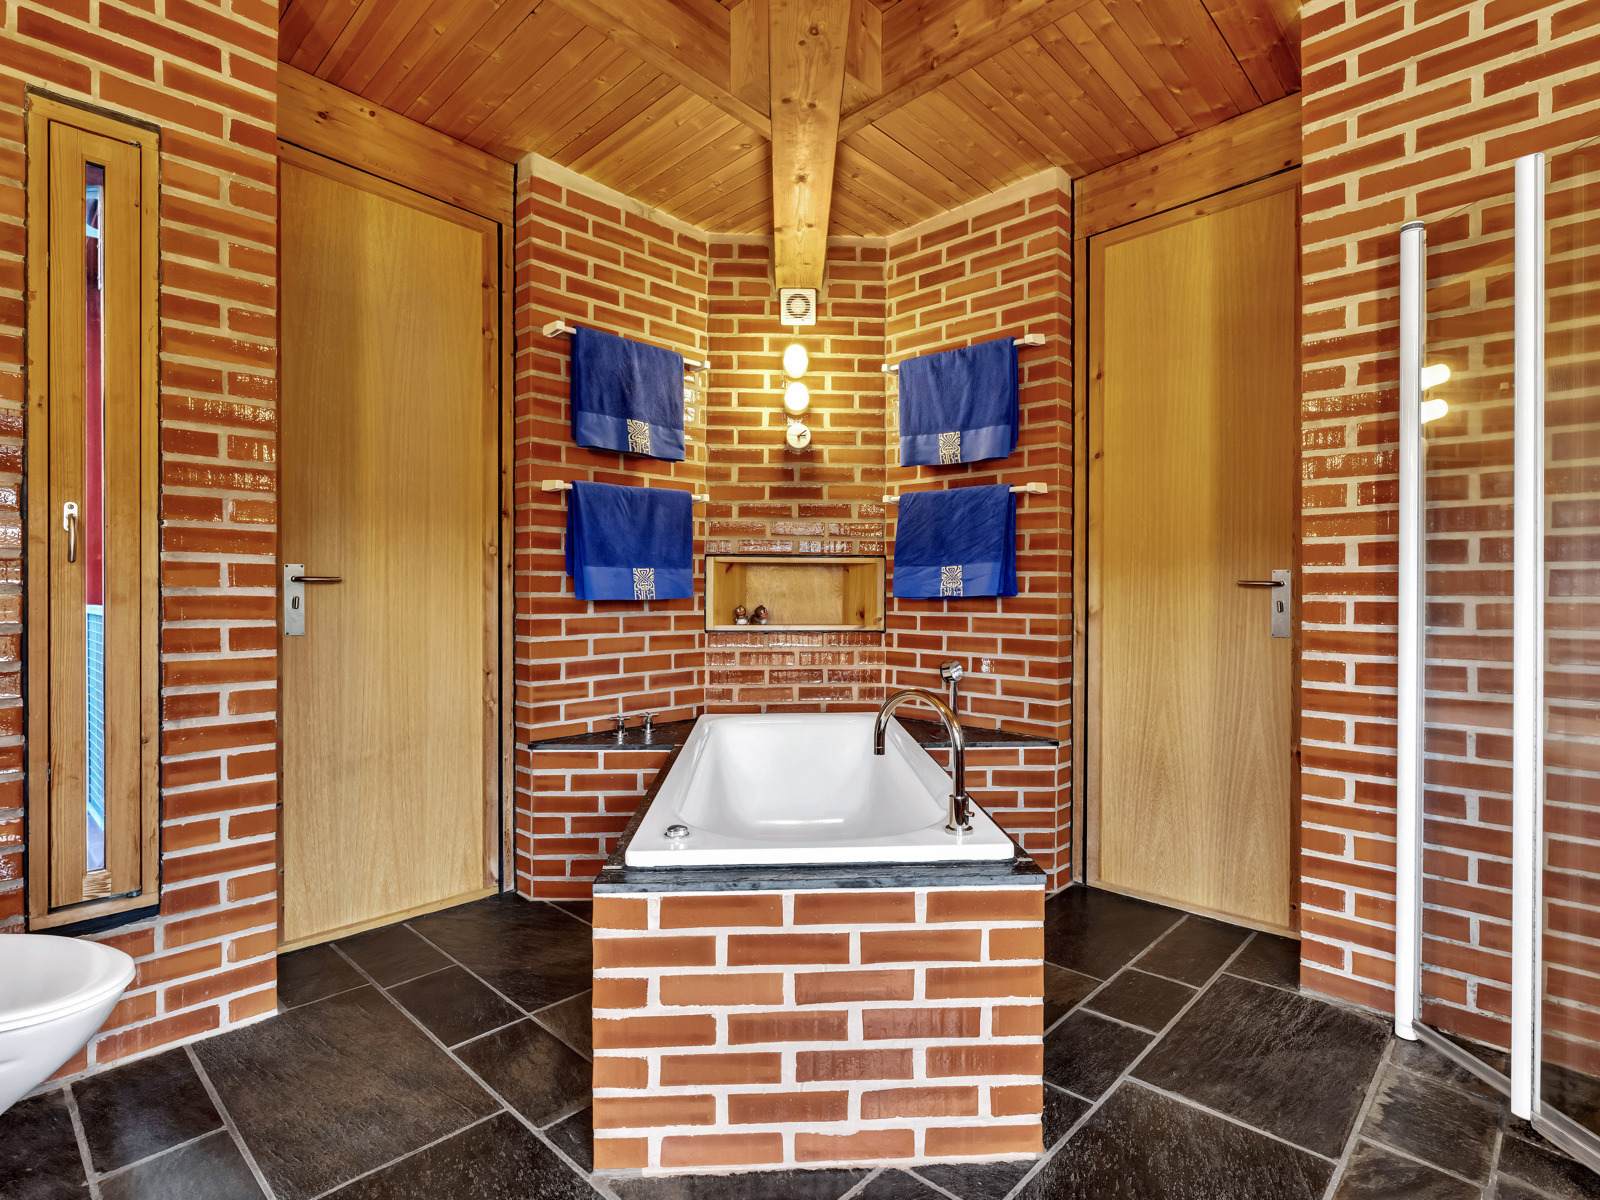 Foto av badet dekket av fliser som ligner murstein.